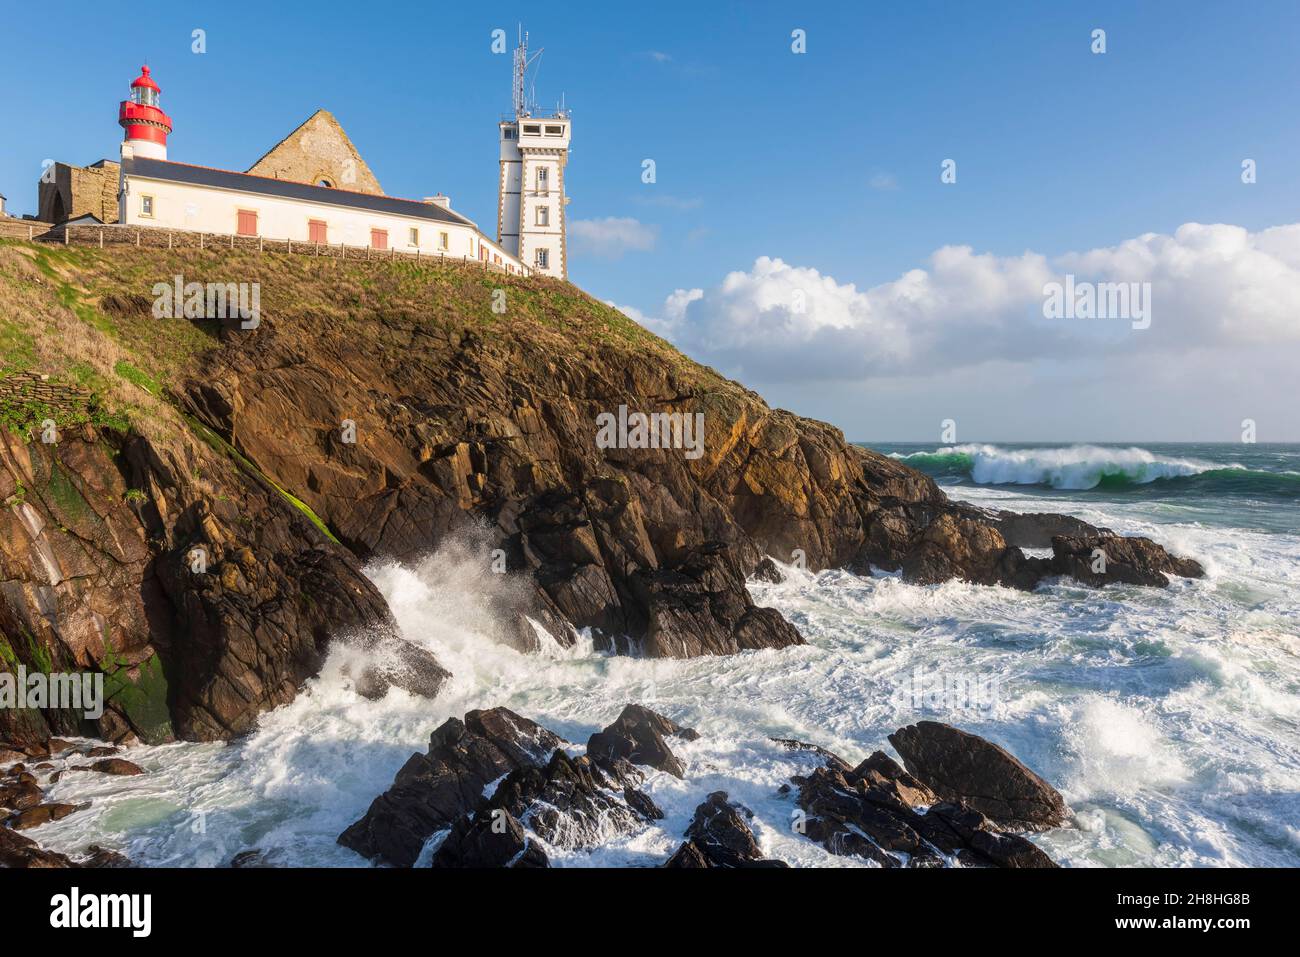 France, Finistère, Plougonvelin, Pointe Saint Mathieu avec l'abbaye Saint Mathieu des Beaux-Terre et le phare Saint Mathieu Banque D'Images